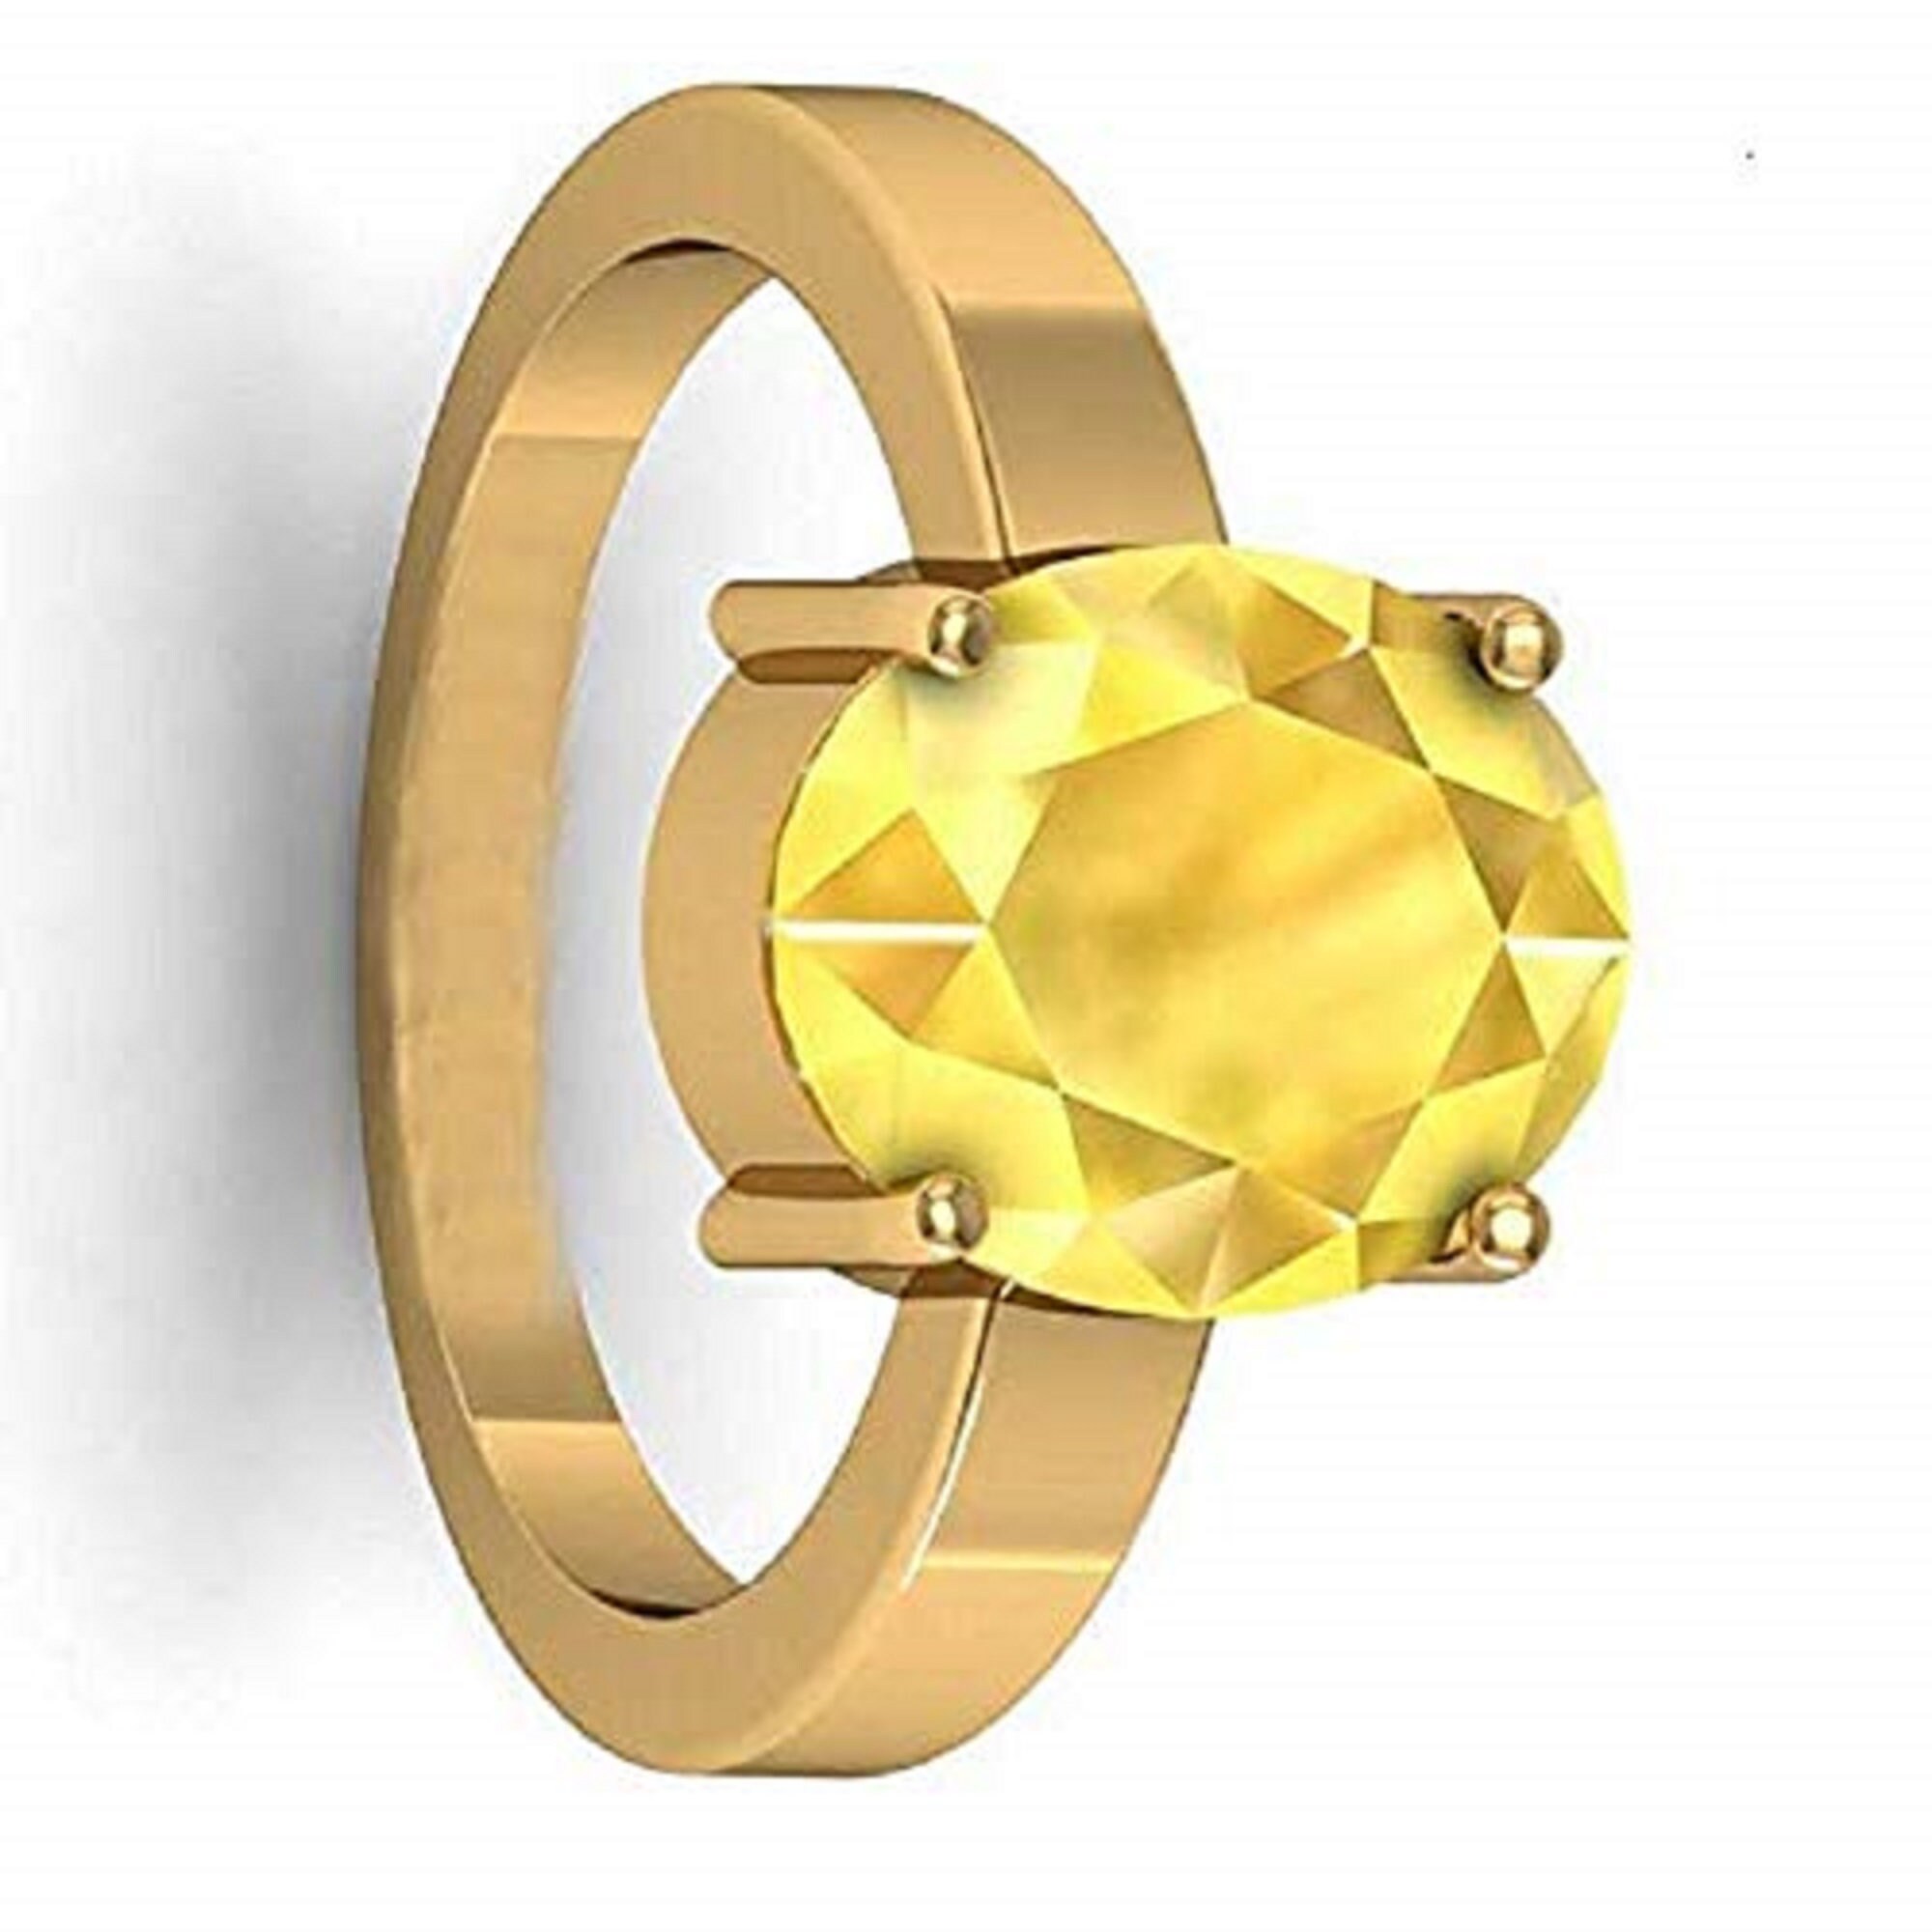 DINJEWEL 10.25 Carat Certified Yellow Sapphire (Pukhraj) Loose Gemstone Ring  For Women Metal Gold Plated Ring Price in India - Buy DINJEWEL 10.25 Carat  Certified Yellow Sapphire (Pukhraj) Loose Gemstone Ring For